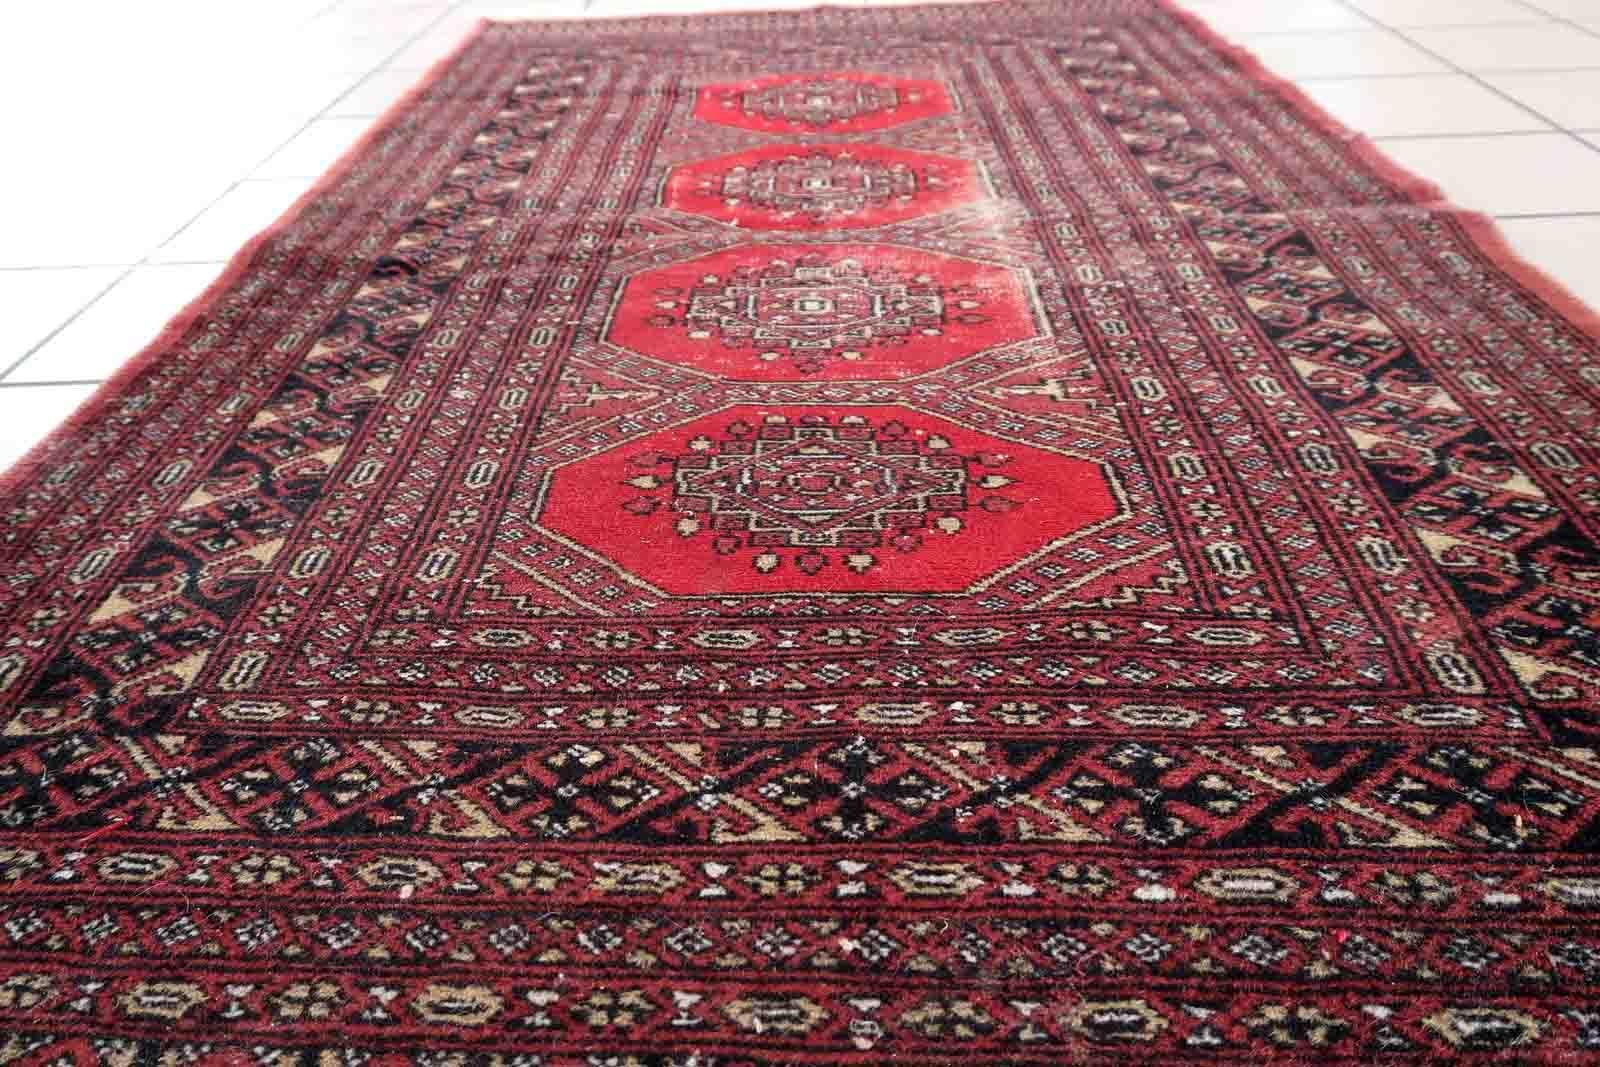 Handgefertigter usbekischer Buchara-Teppich im klassischen Design. Der Teppich stammt aus dem Ende des 20. Jahrhunderts und ist in schlechtem Zustand.

-Zustand: original gut,

-Umgebung: 1970er Jahre,

-Größe: 3' x 5.3' (94cm x 163cm),

-MATERIAL: